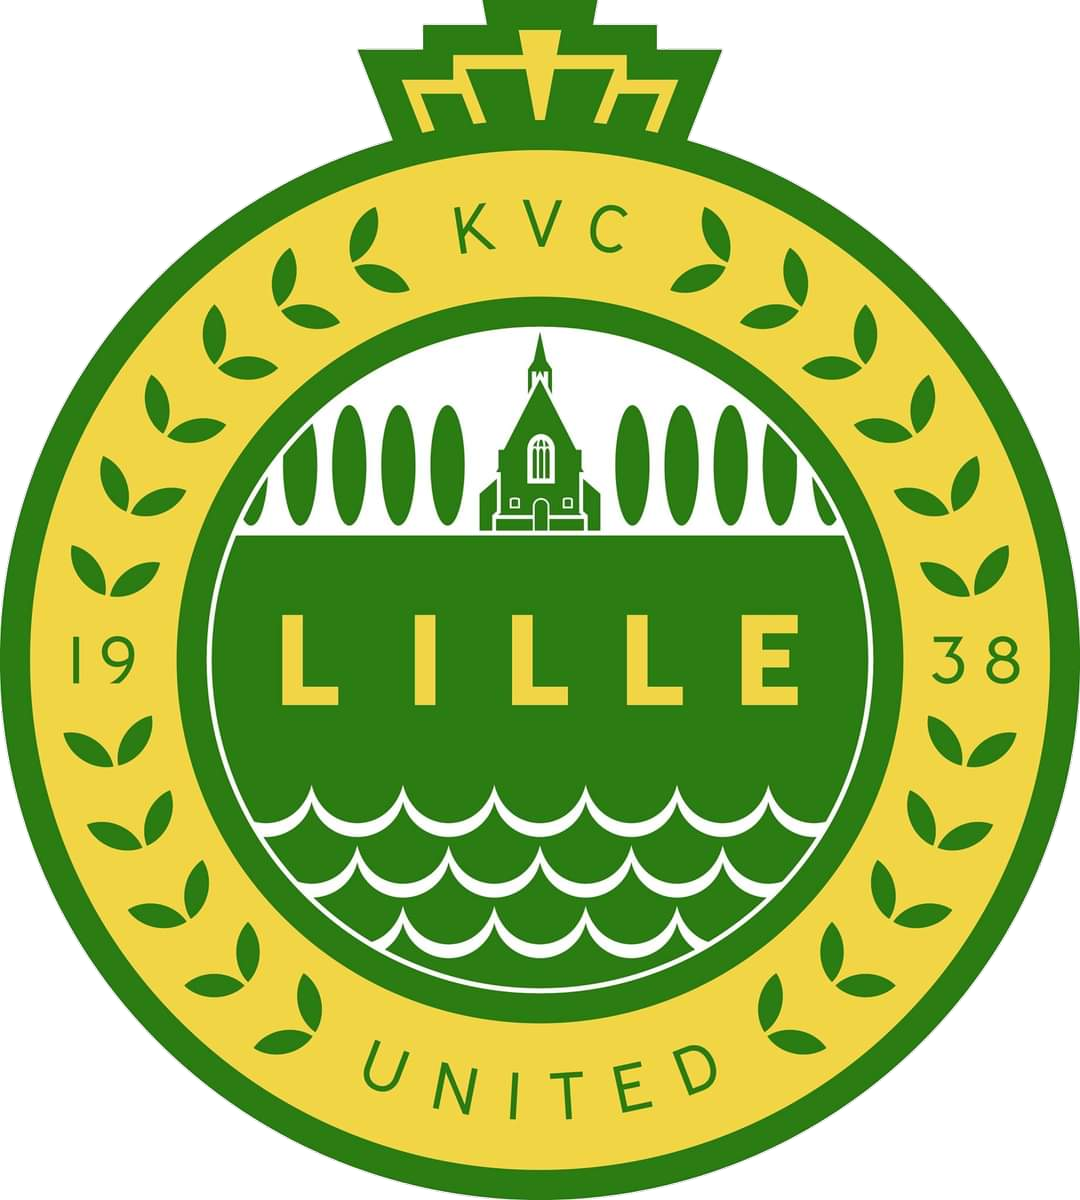 Wappen KVC Lille United diverse  57340